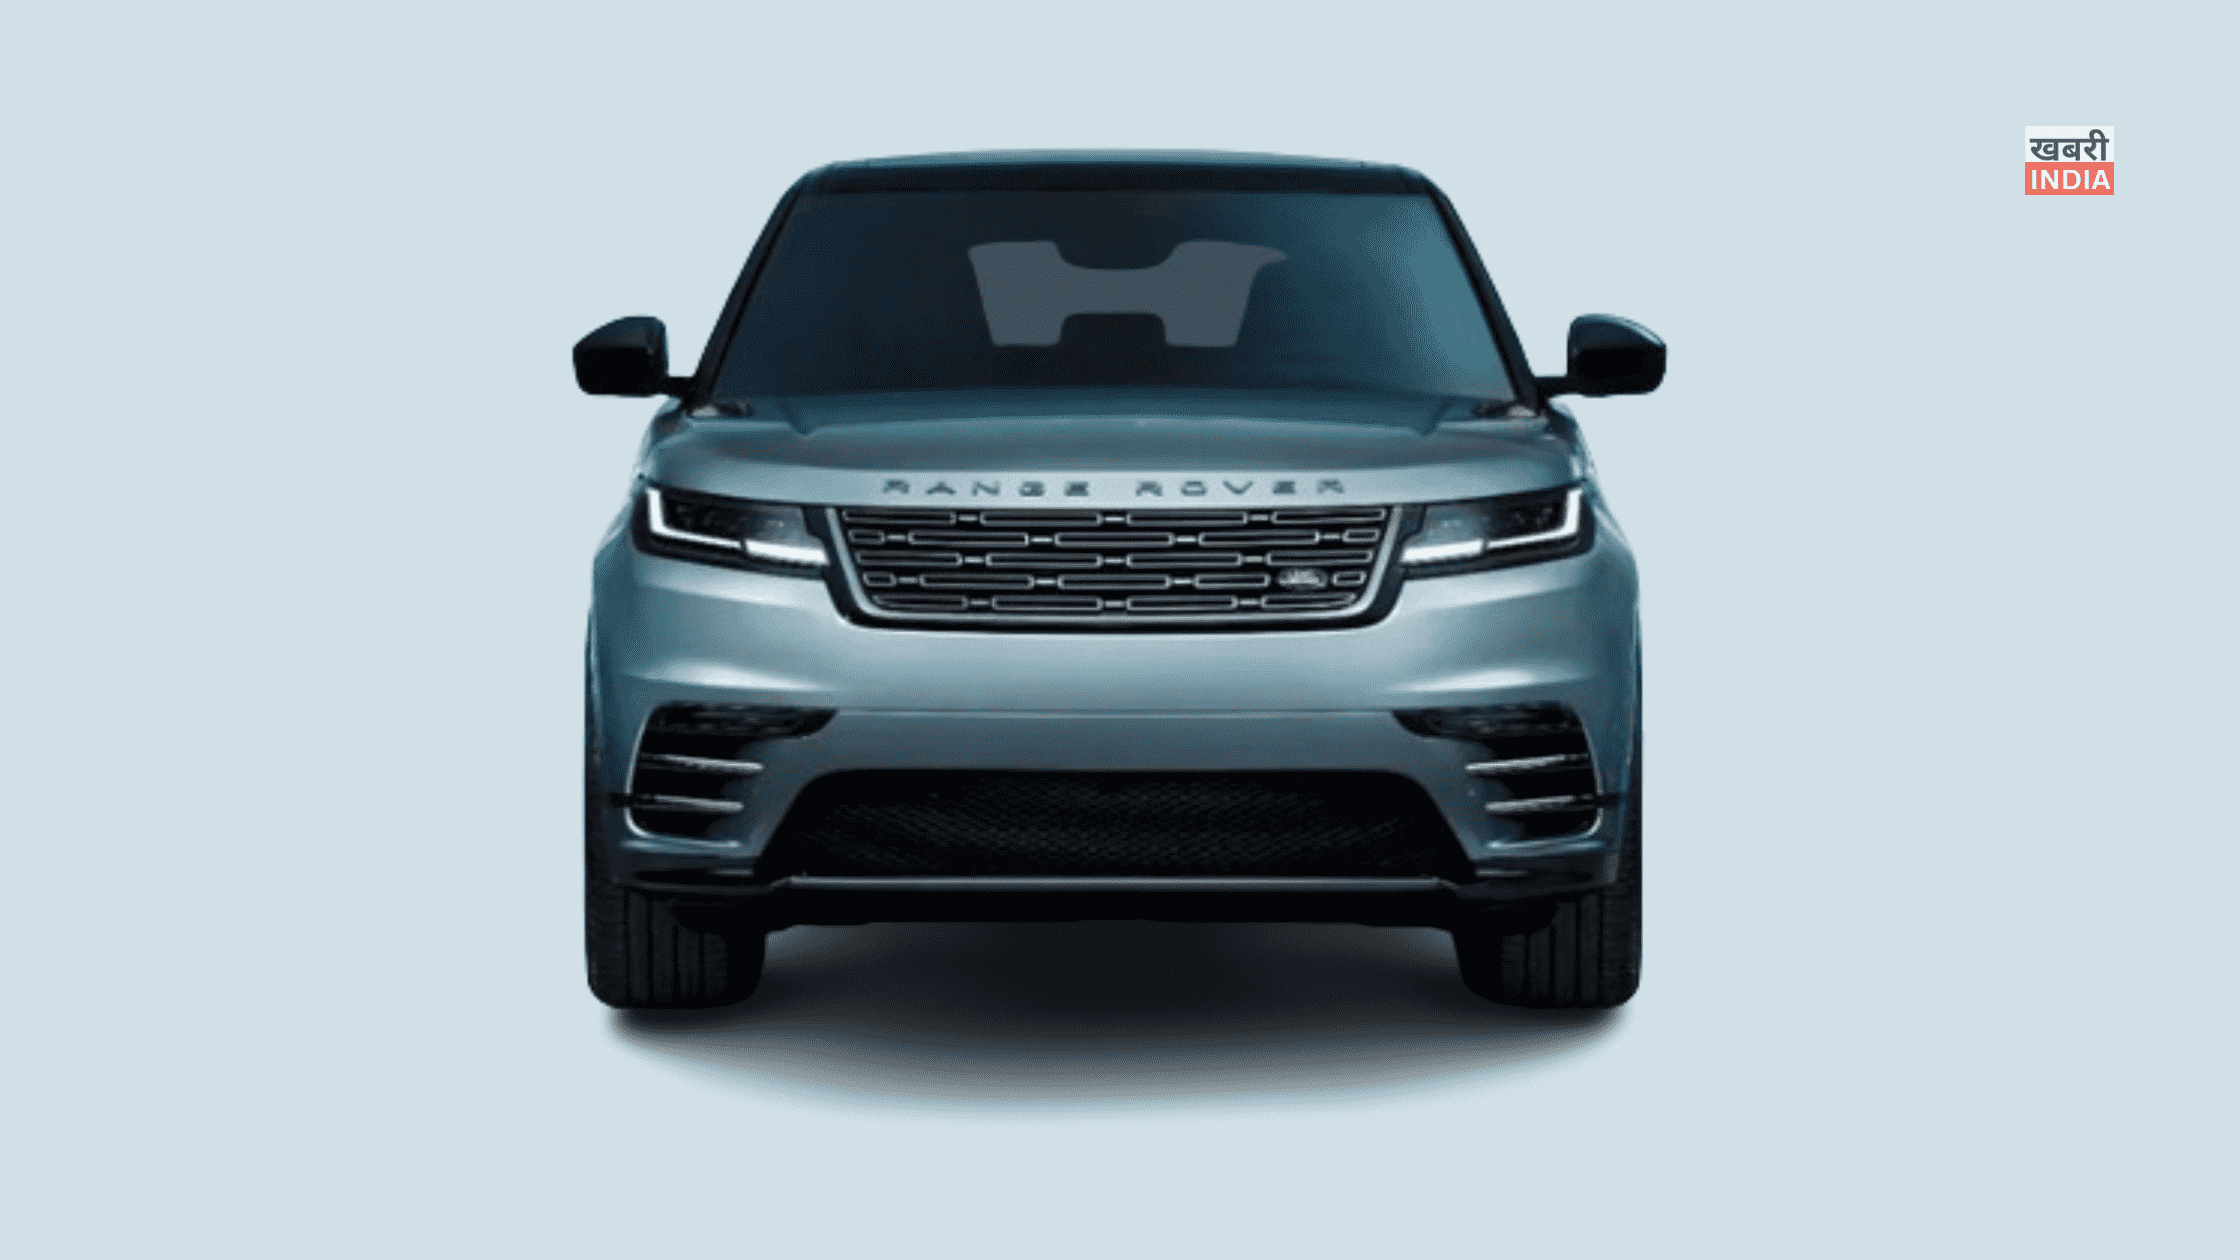 Range Rover Velar Price In India